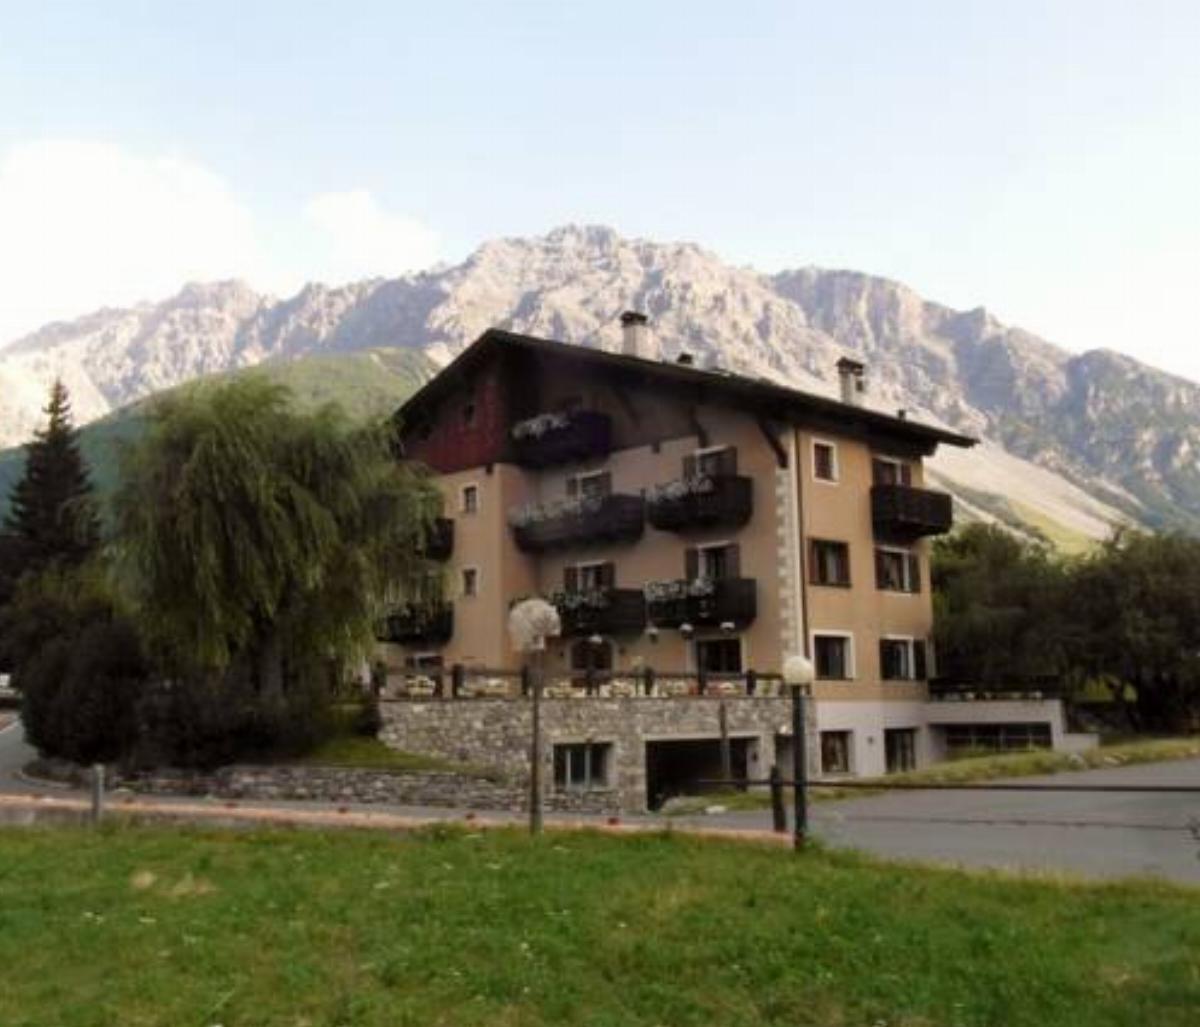 Alpi & Golf Hotel Hotel Bormio Italy